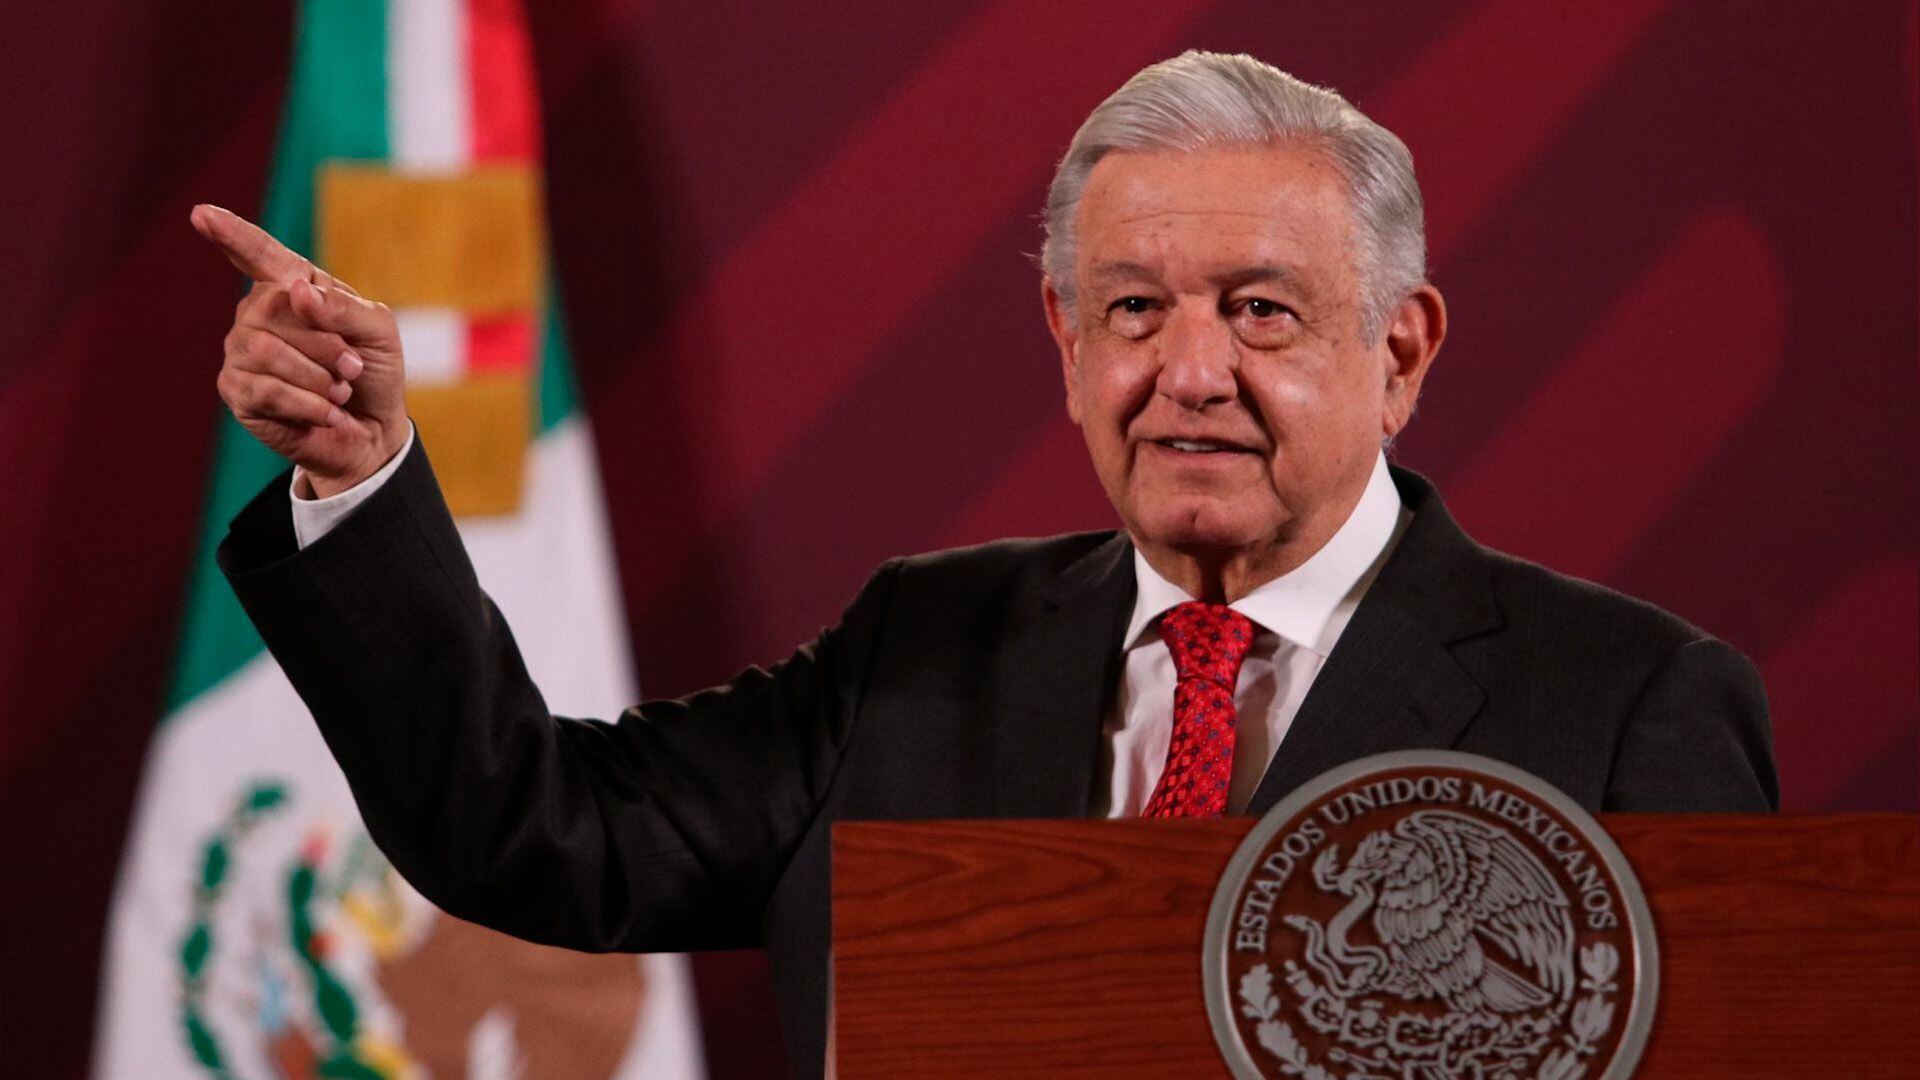 López Obrador reaccionó a los disturbios en el Congreso de Nuevo León
AMLO, Congreso de Nuevo León, mañanera, Samuel García